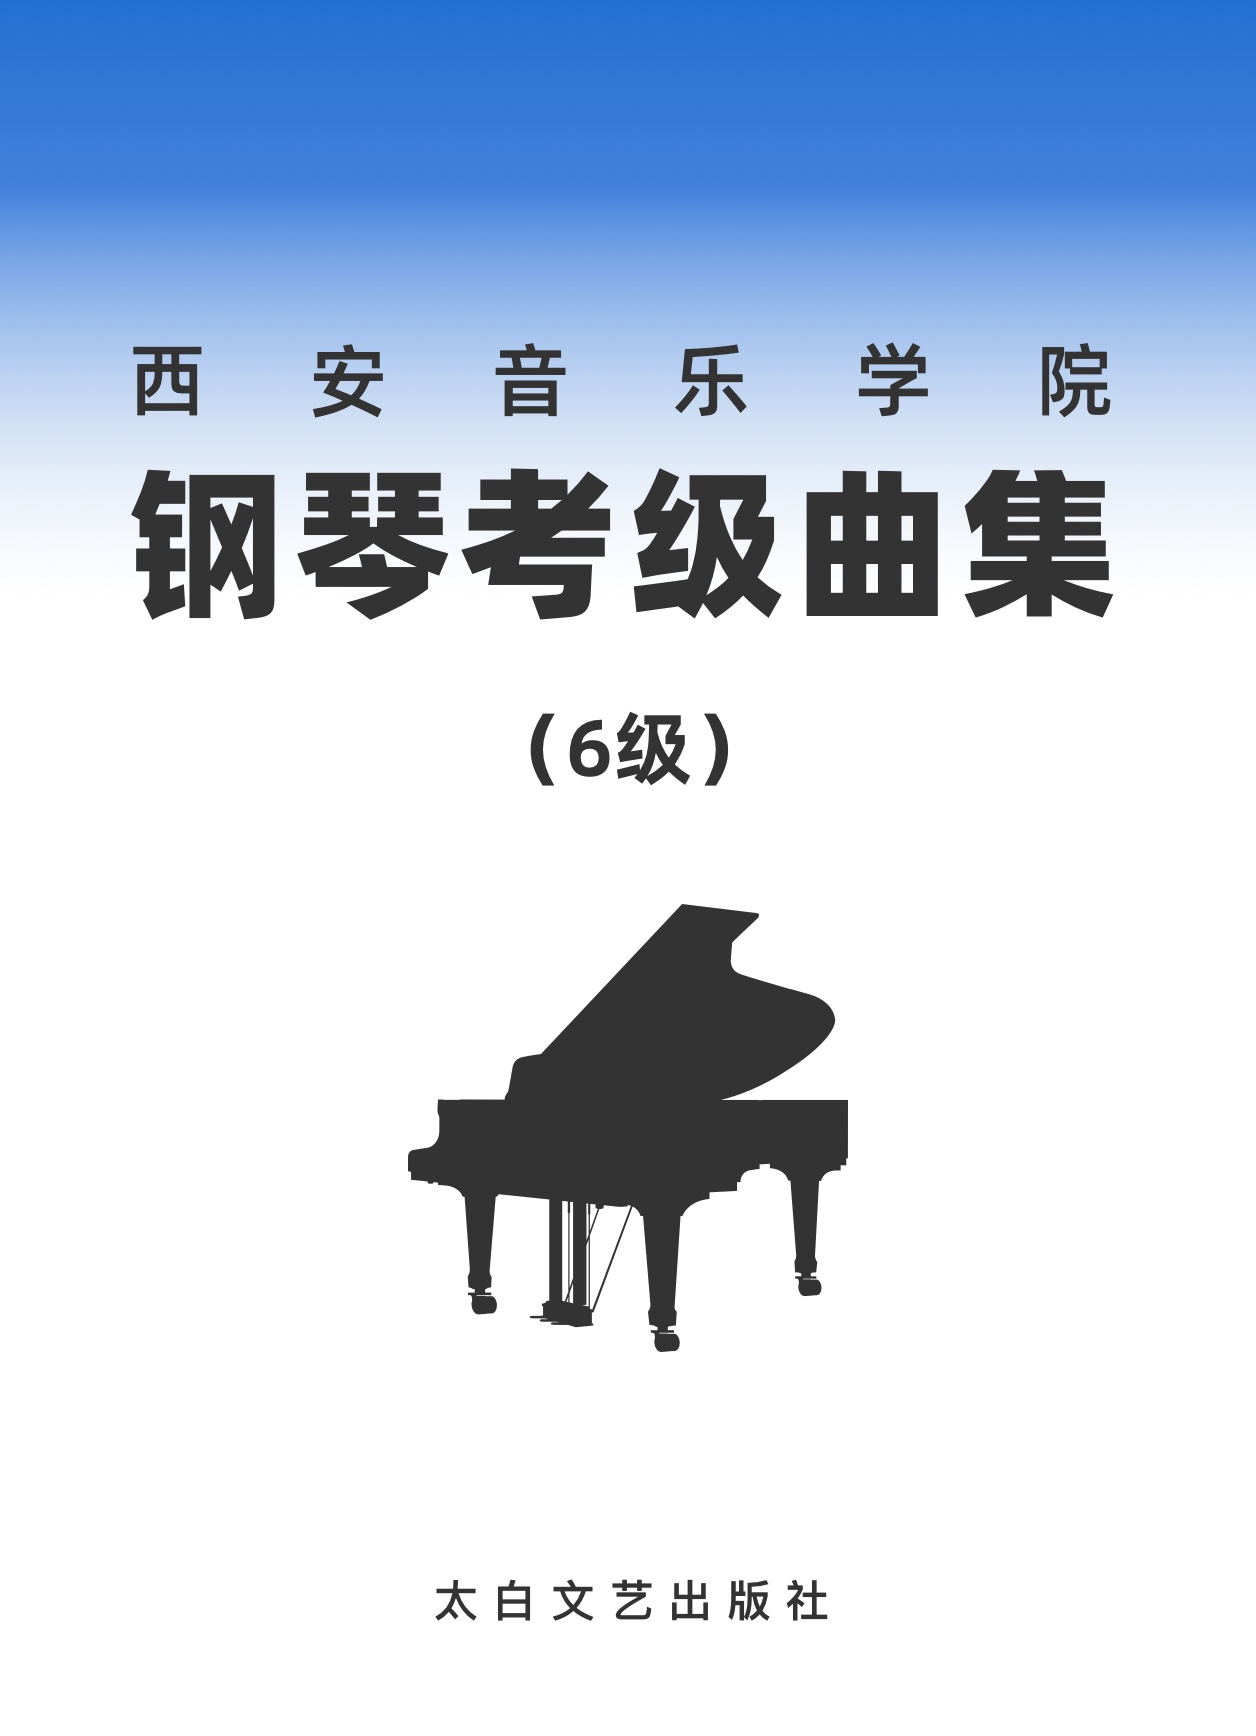 11第六级 f和声小调音阶-钢琴谱